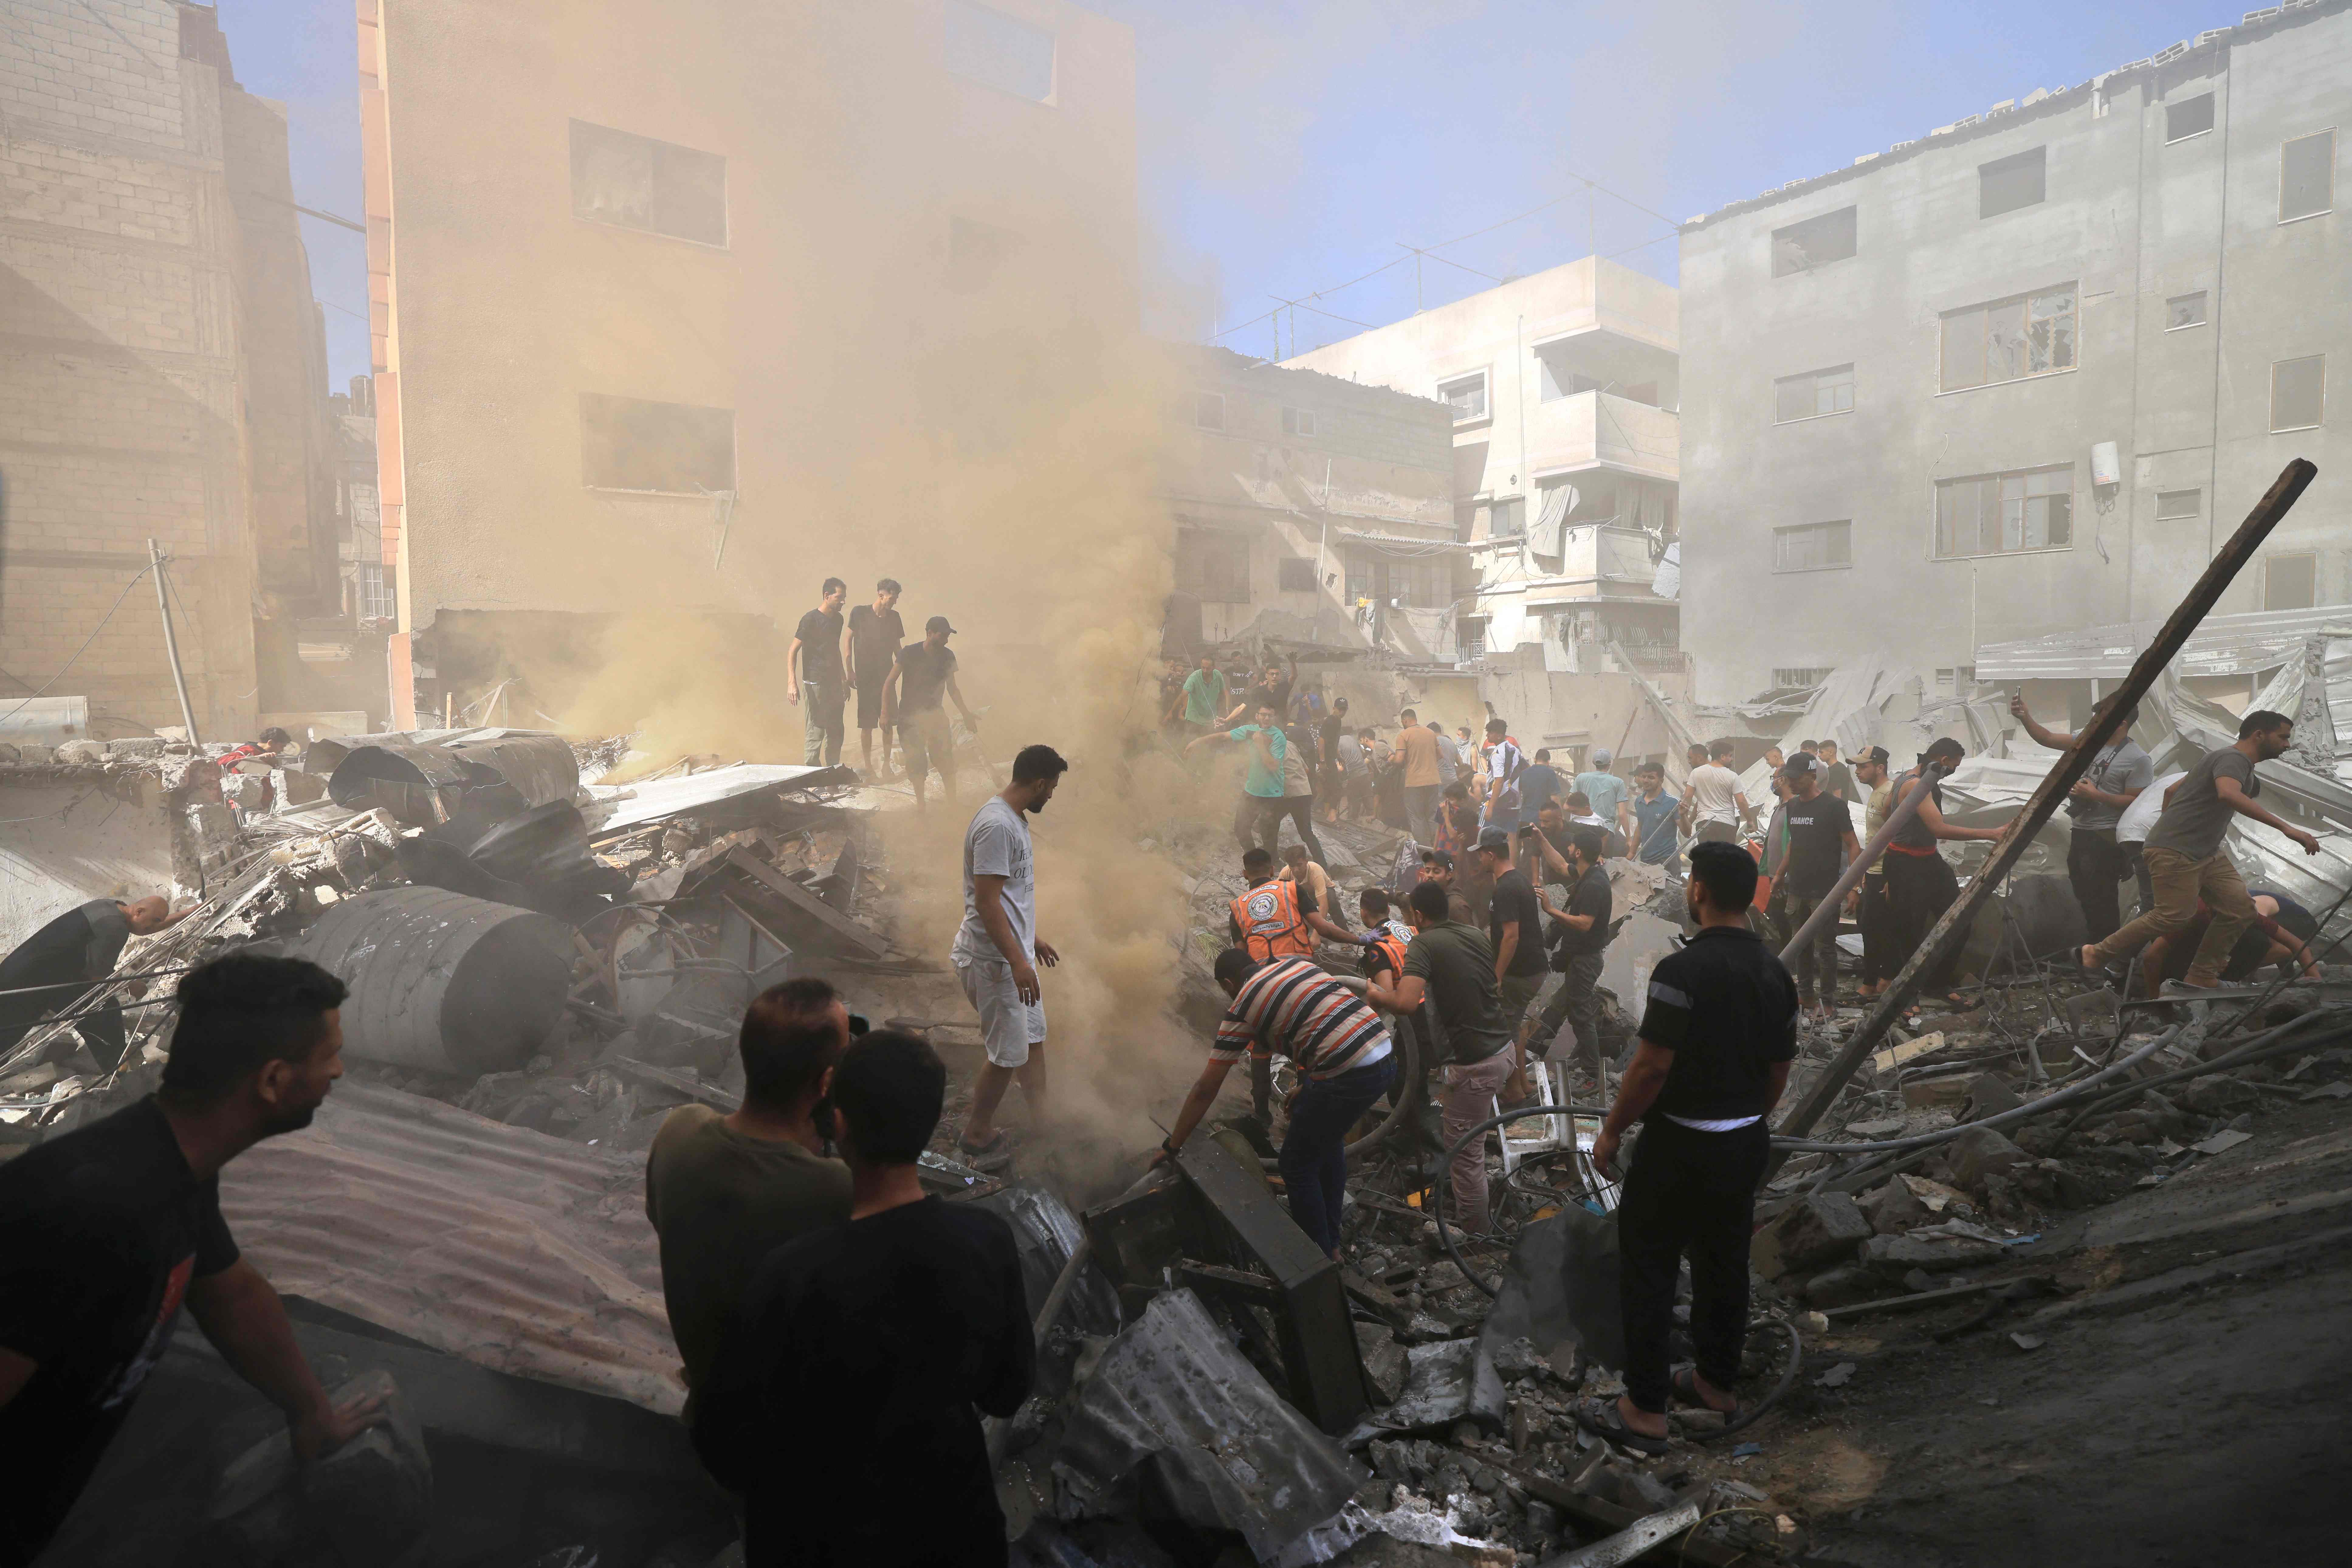 Durch Angriffe wurde die Stadt in Schutt und Asche gelegt, was nach Ansicht einiger Experten von der Hamas genutzt werden könnte, um IDF-Truppen anzugreifen